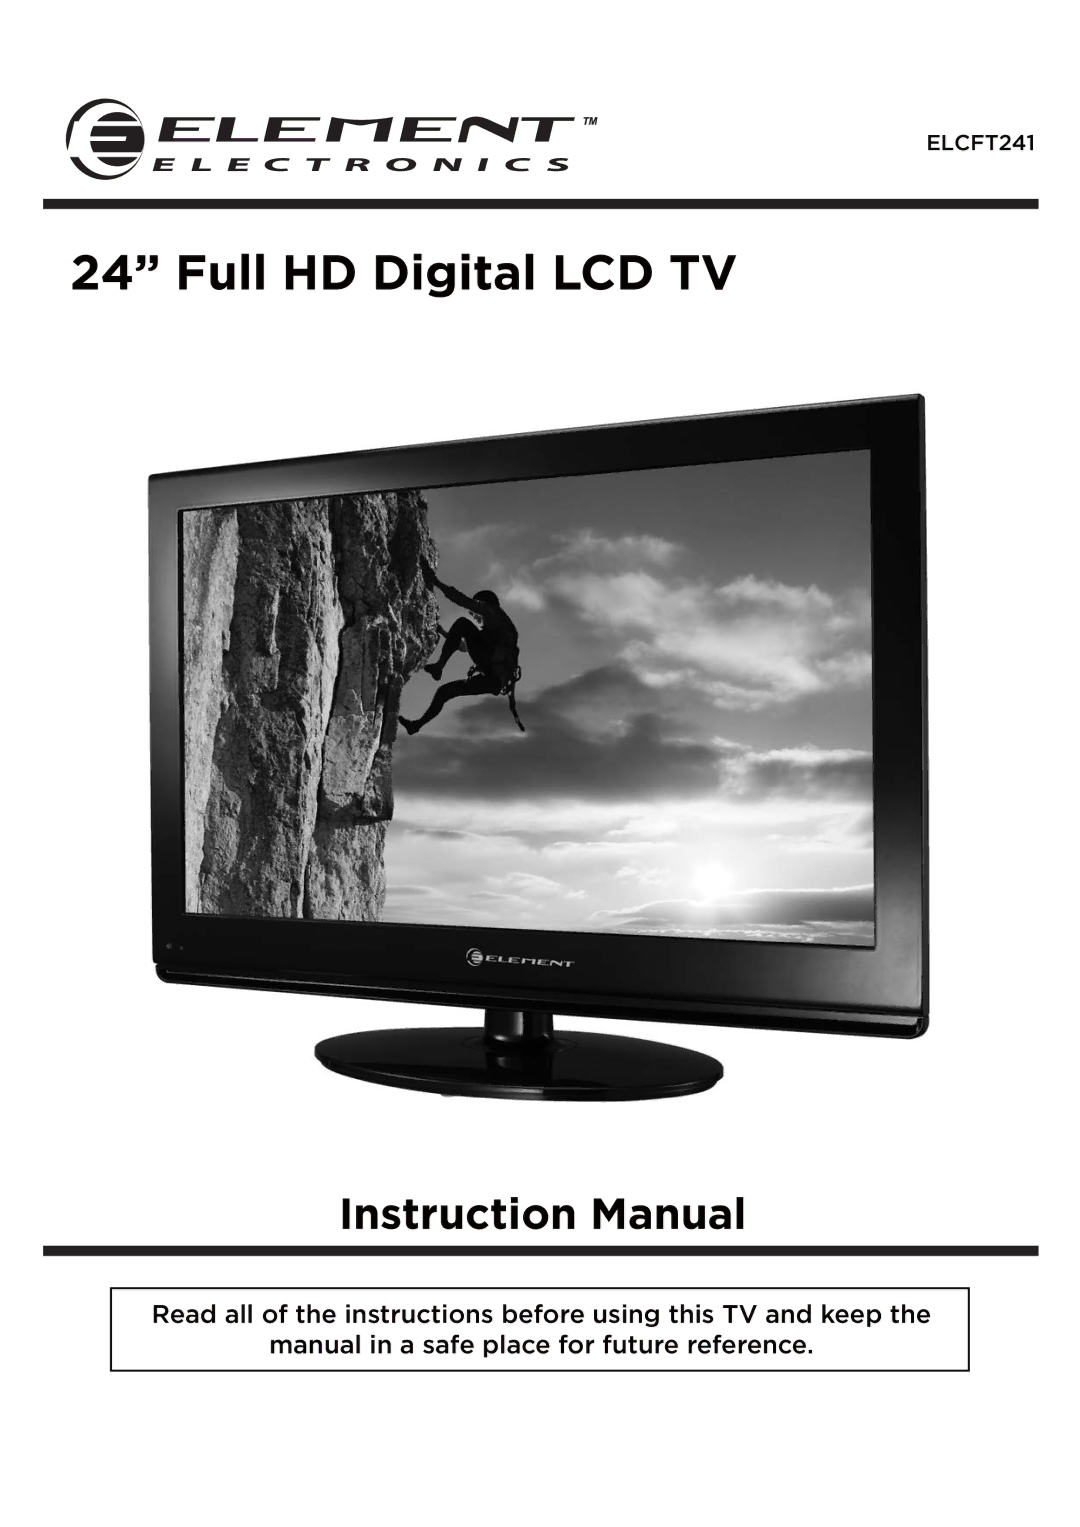 Element Electronics ELCFT241 manual Full HD Digital LCD TV 